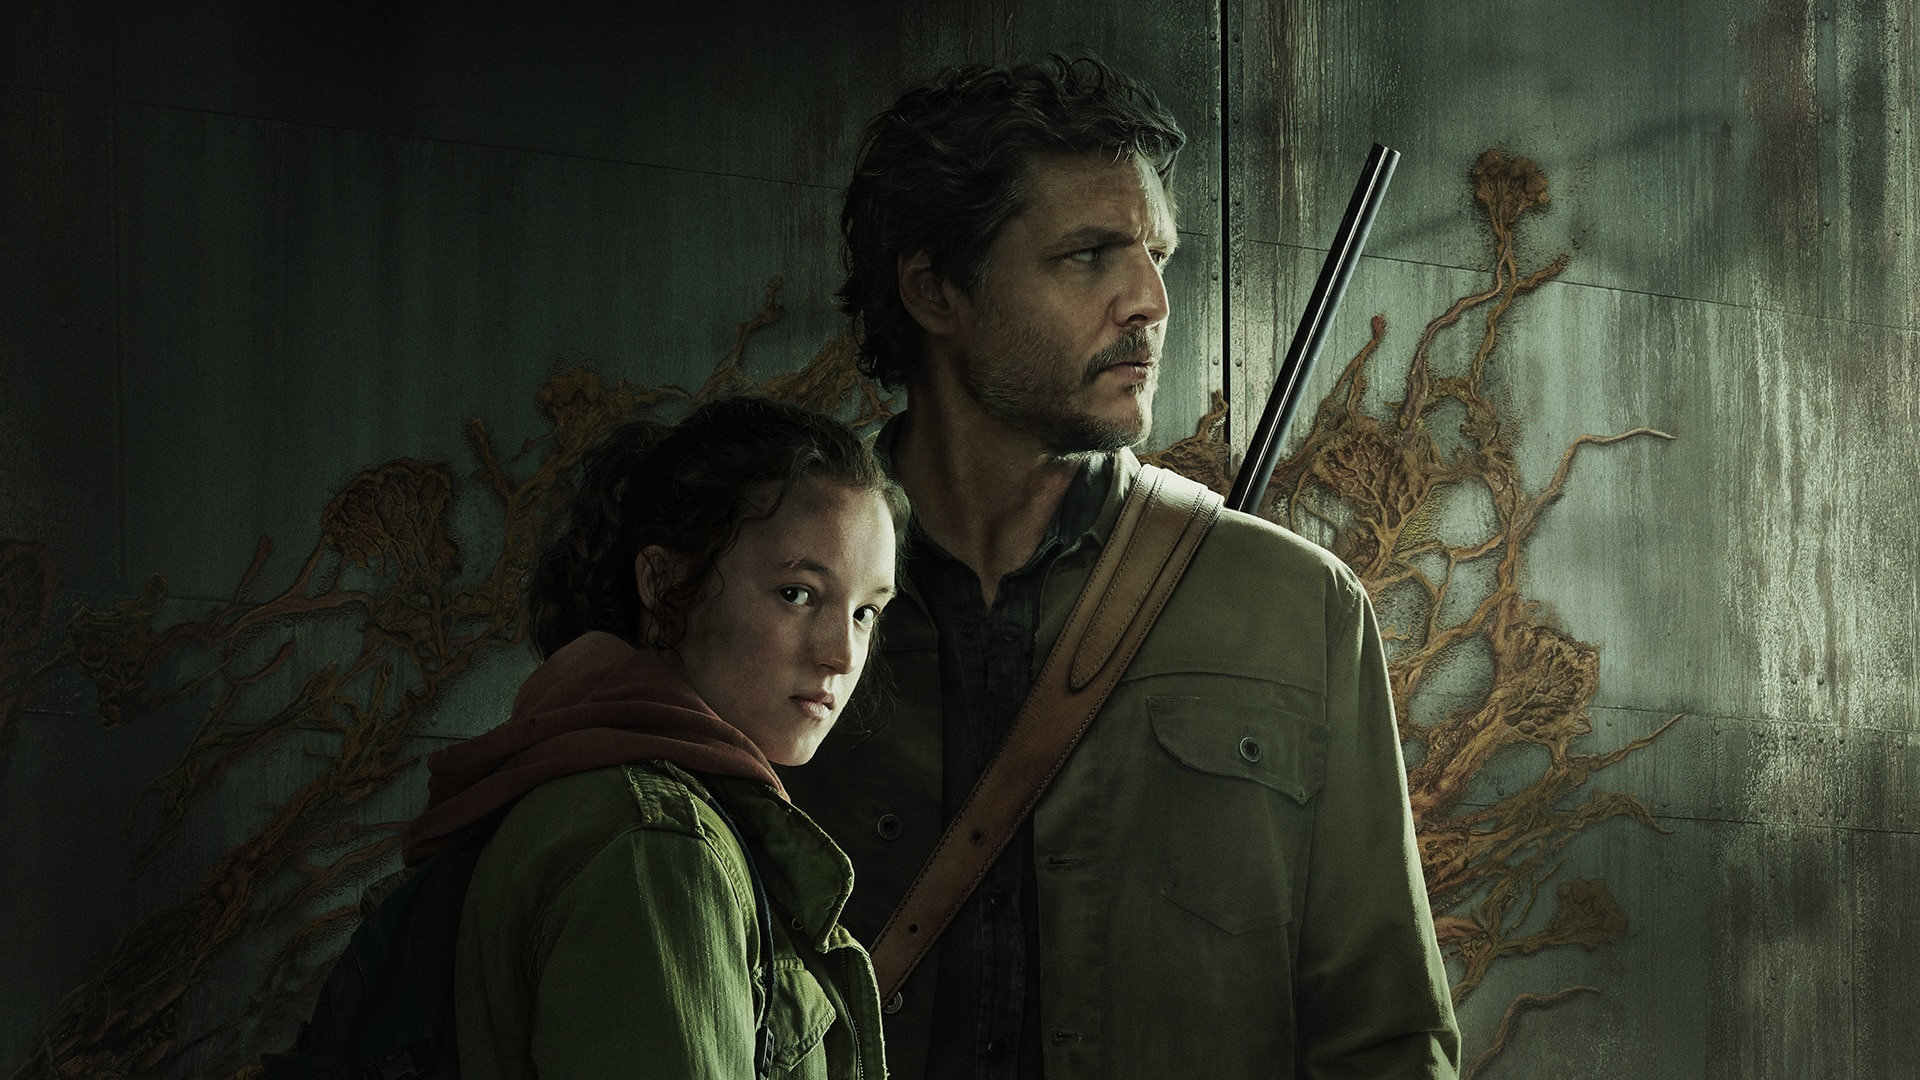 La serie The Last of Us llevó el juego a lo más alto de las listas de ventas